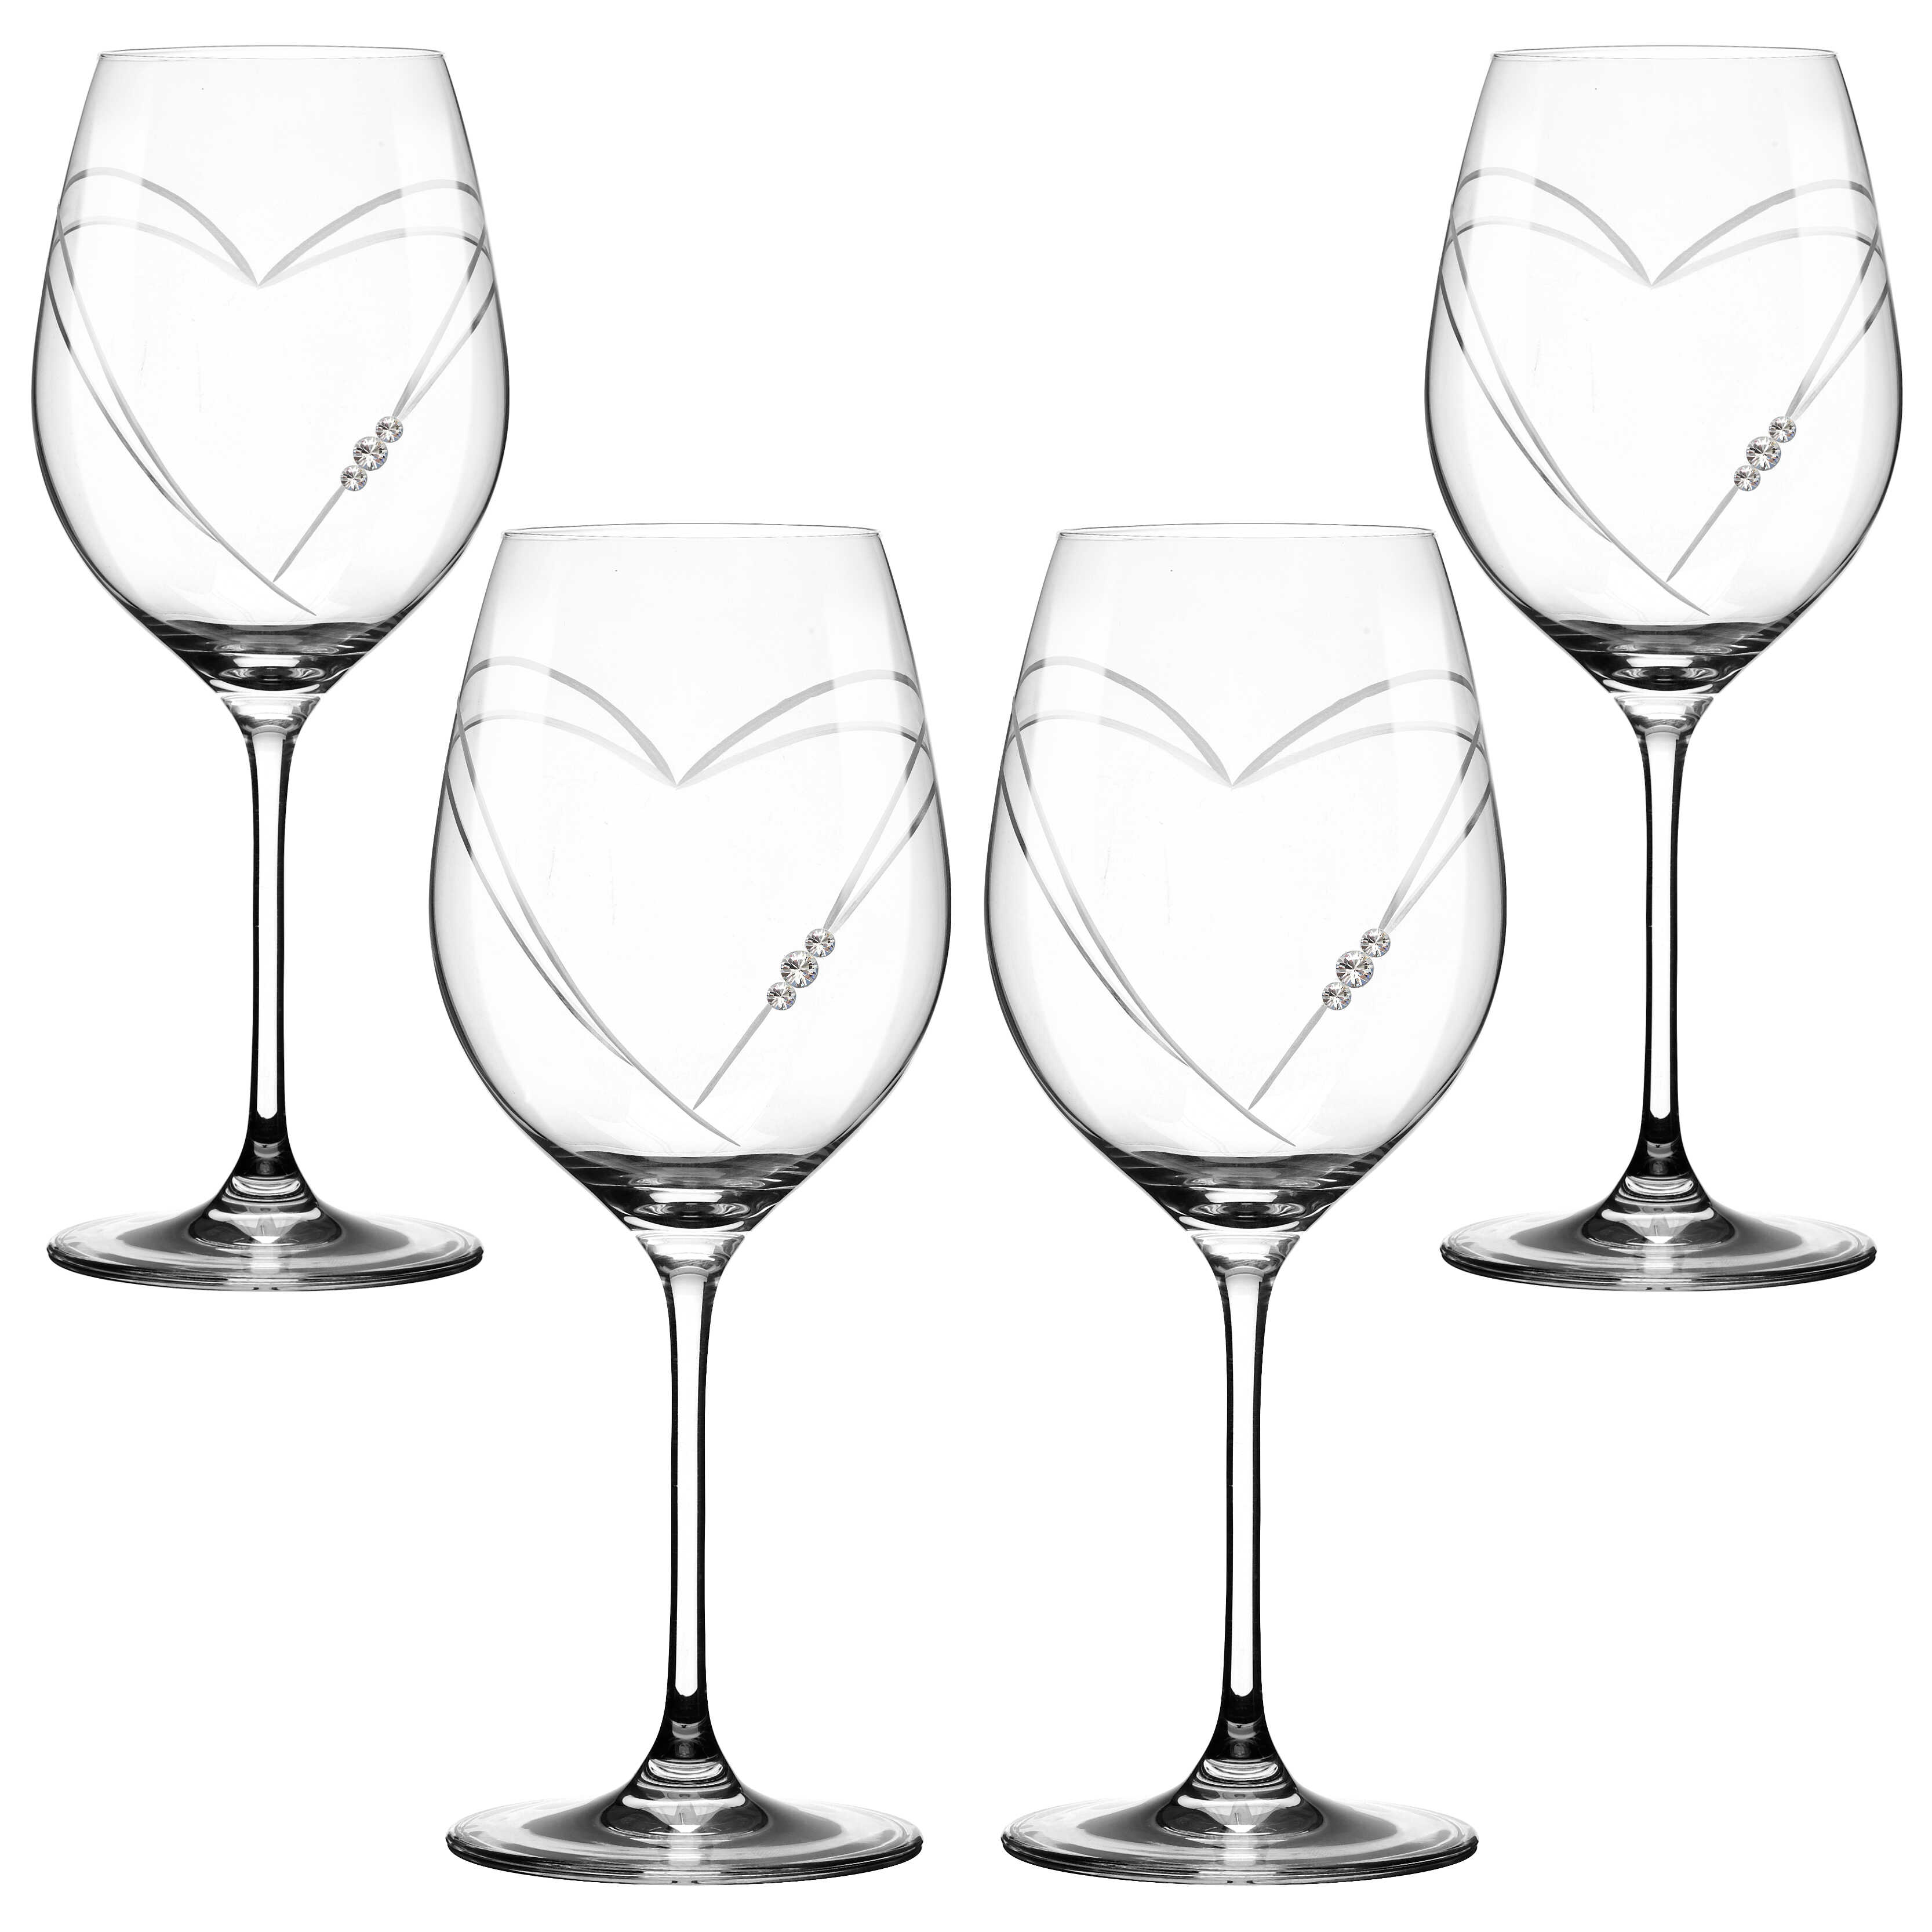 Two Hearts Rødvinsglas med Swarovski krystaller - 2 stk.